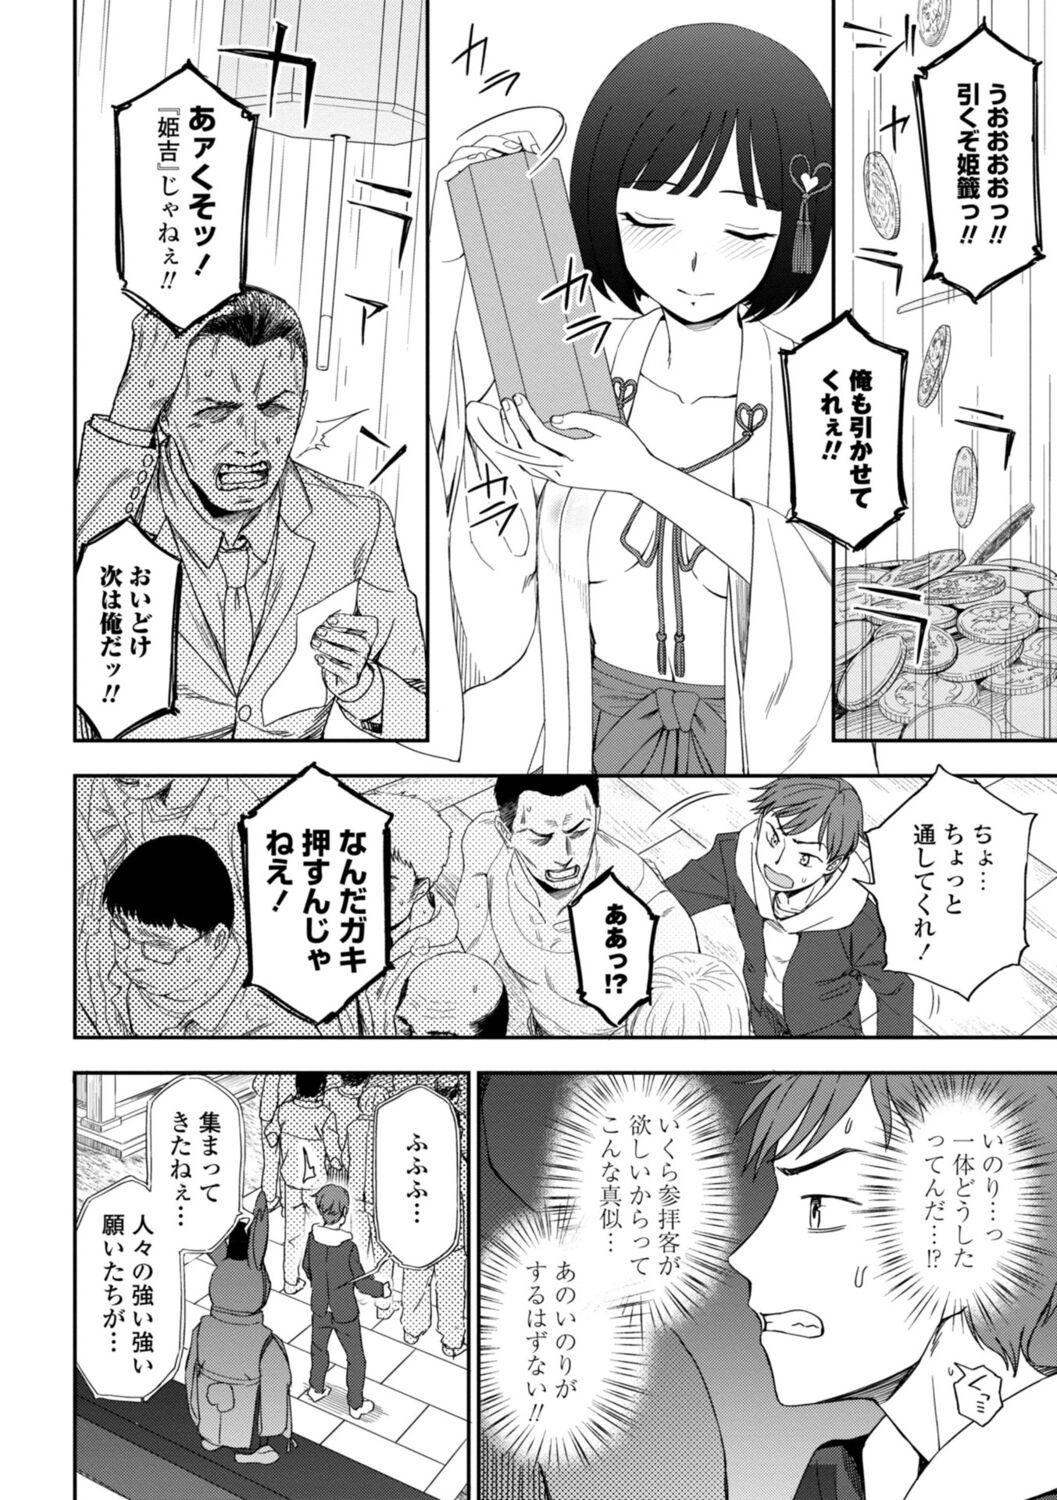 Cavalgando Watashi no Subete Sasagemasu - I'll give you all of mine. Tetas - Page 8